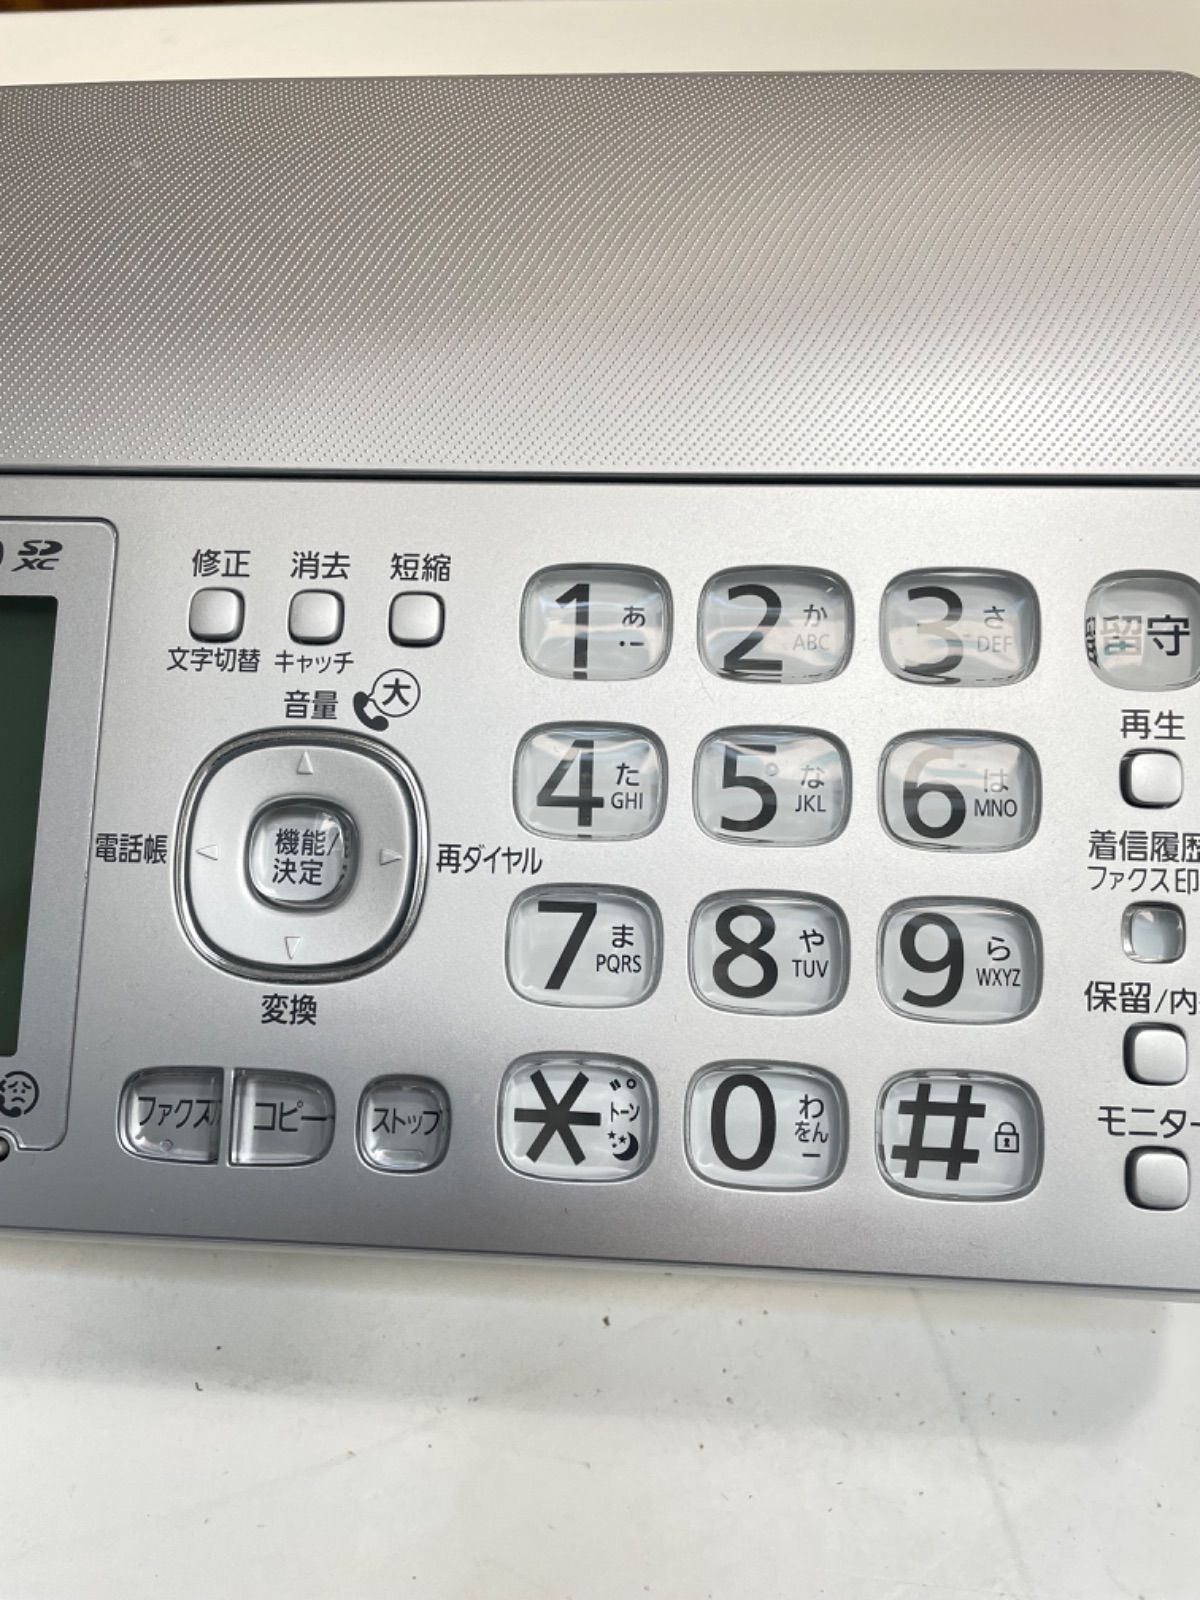 パナソニック おたっくす FAX電話機 KX-PZ310-S（親機のみ)Panasonic